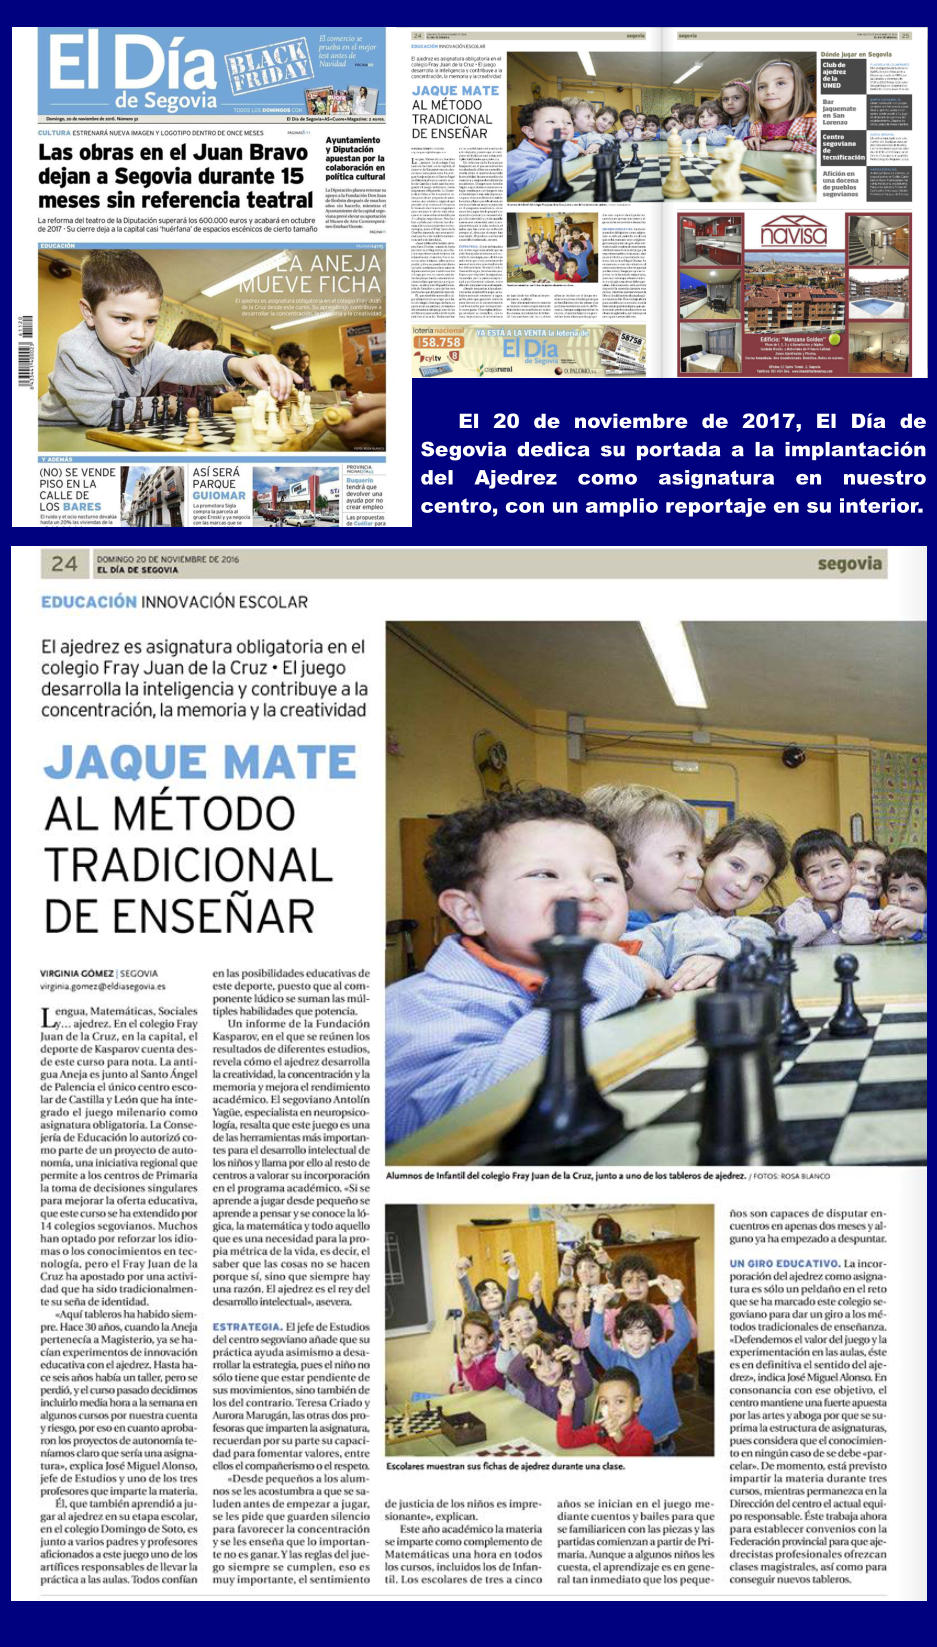 El 20 de noviembre de 2017, El Día de Segovia dedica su portada a la implantación del Ajedrez como asignatura en nuestro centro, con un amplio reportaje en su interior.